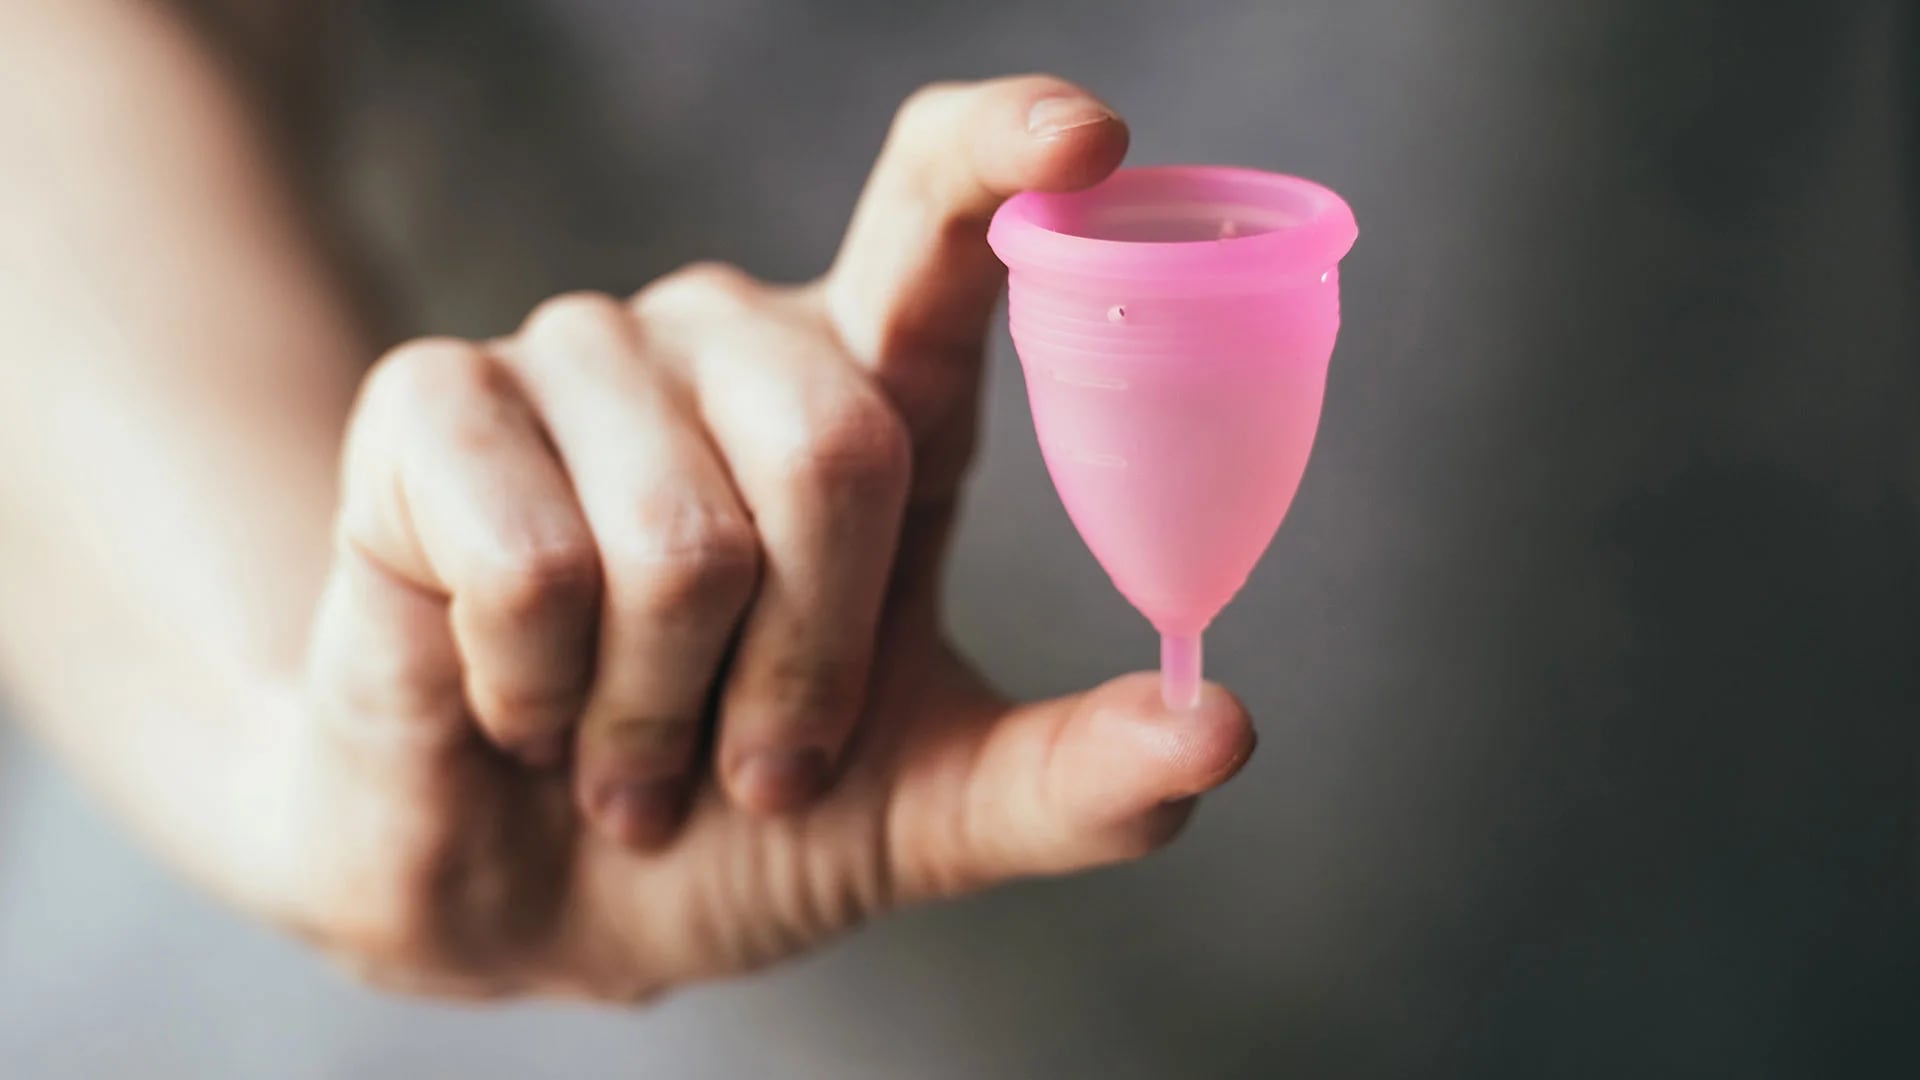 Las copas menstruales son dispositivos flexibles con forma de campana, hechos de silicona, goma o látex que se insertan en la vagina para recoger la sangre menstrual (Shutterstock)